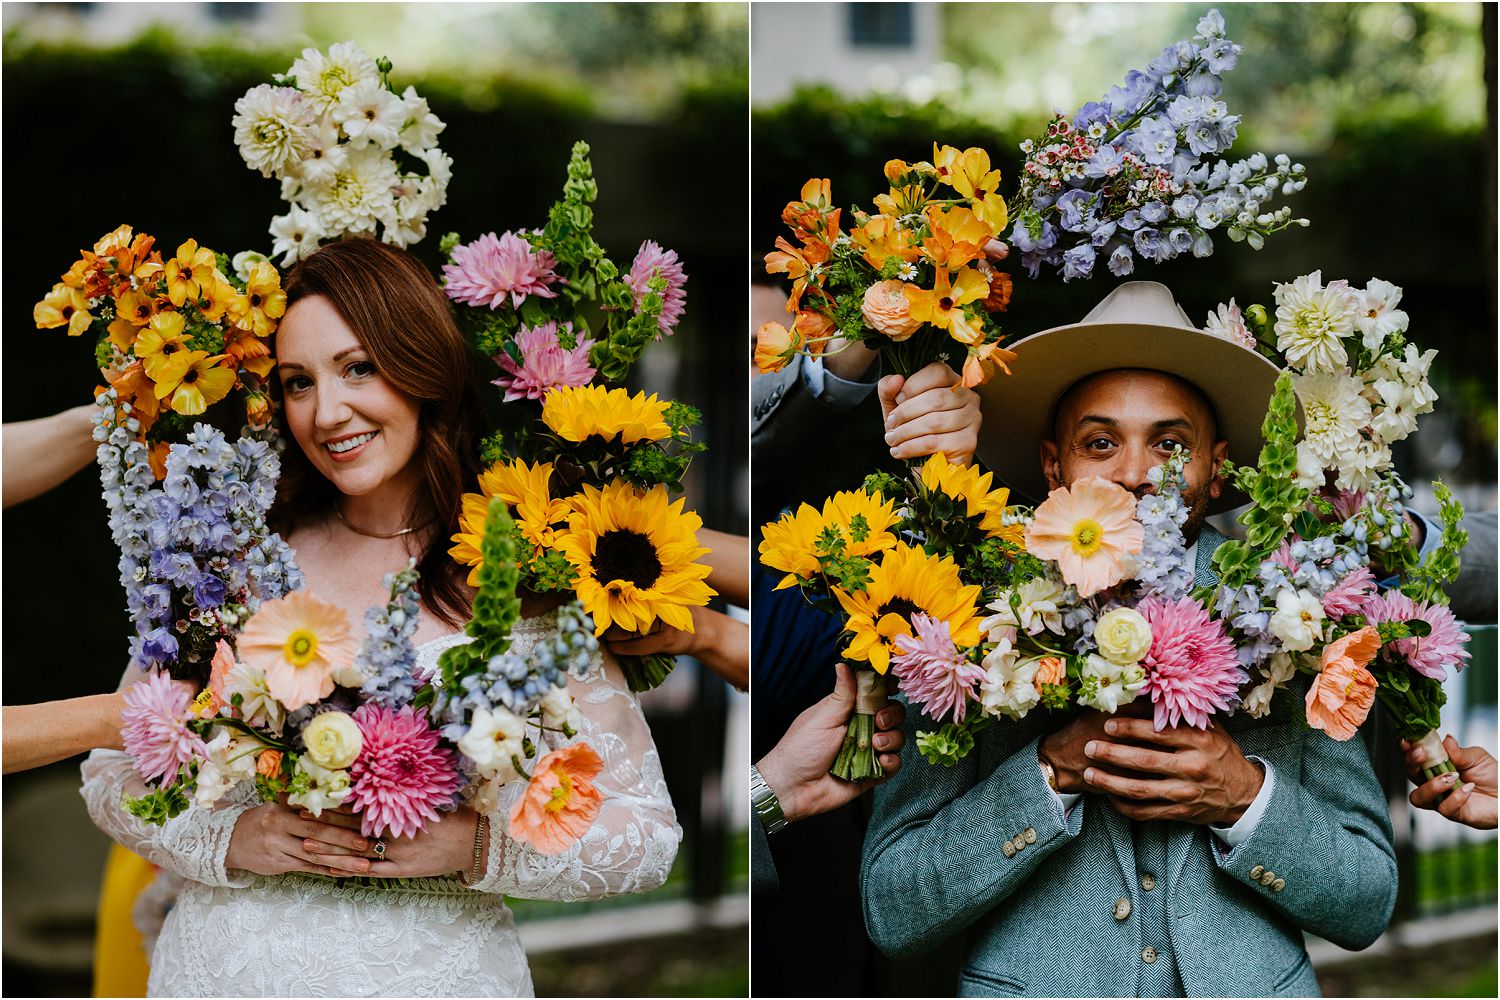 fun floral portrait idea for wedding couple